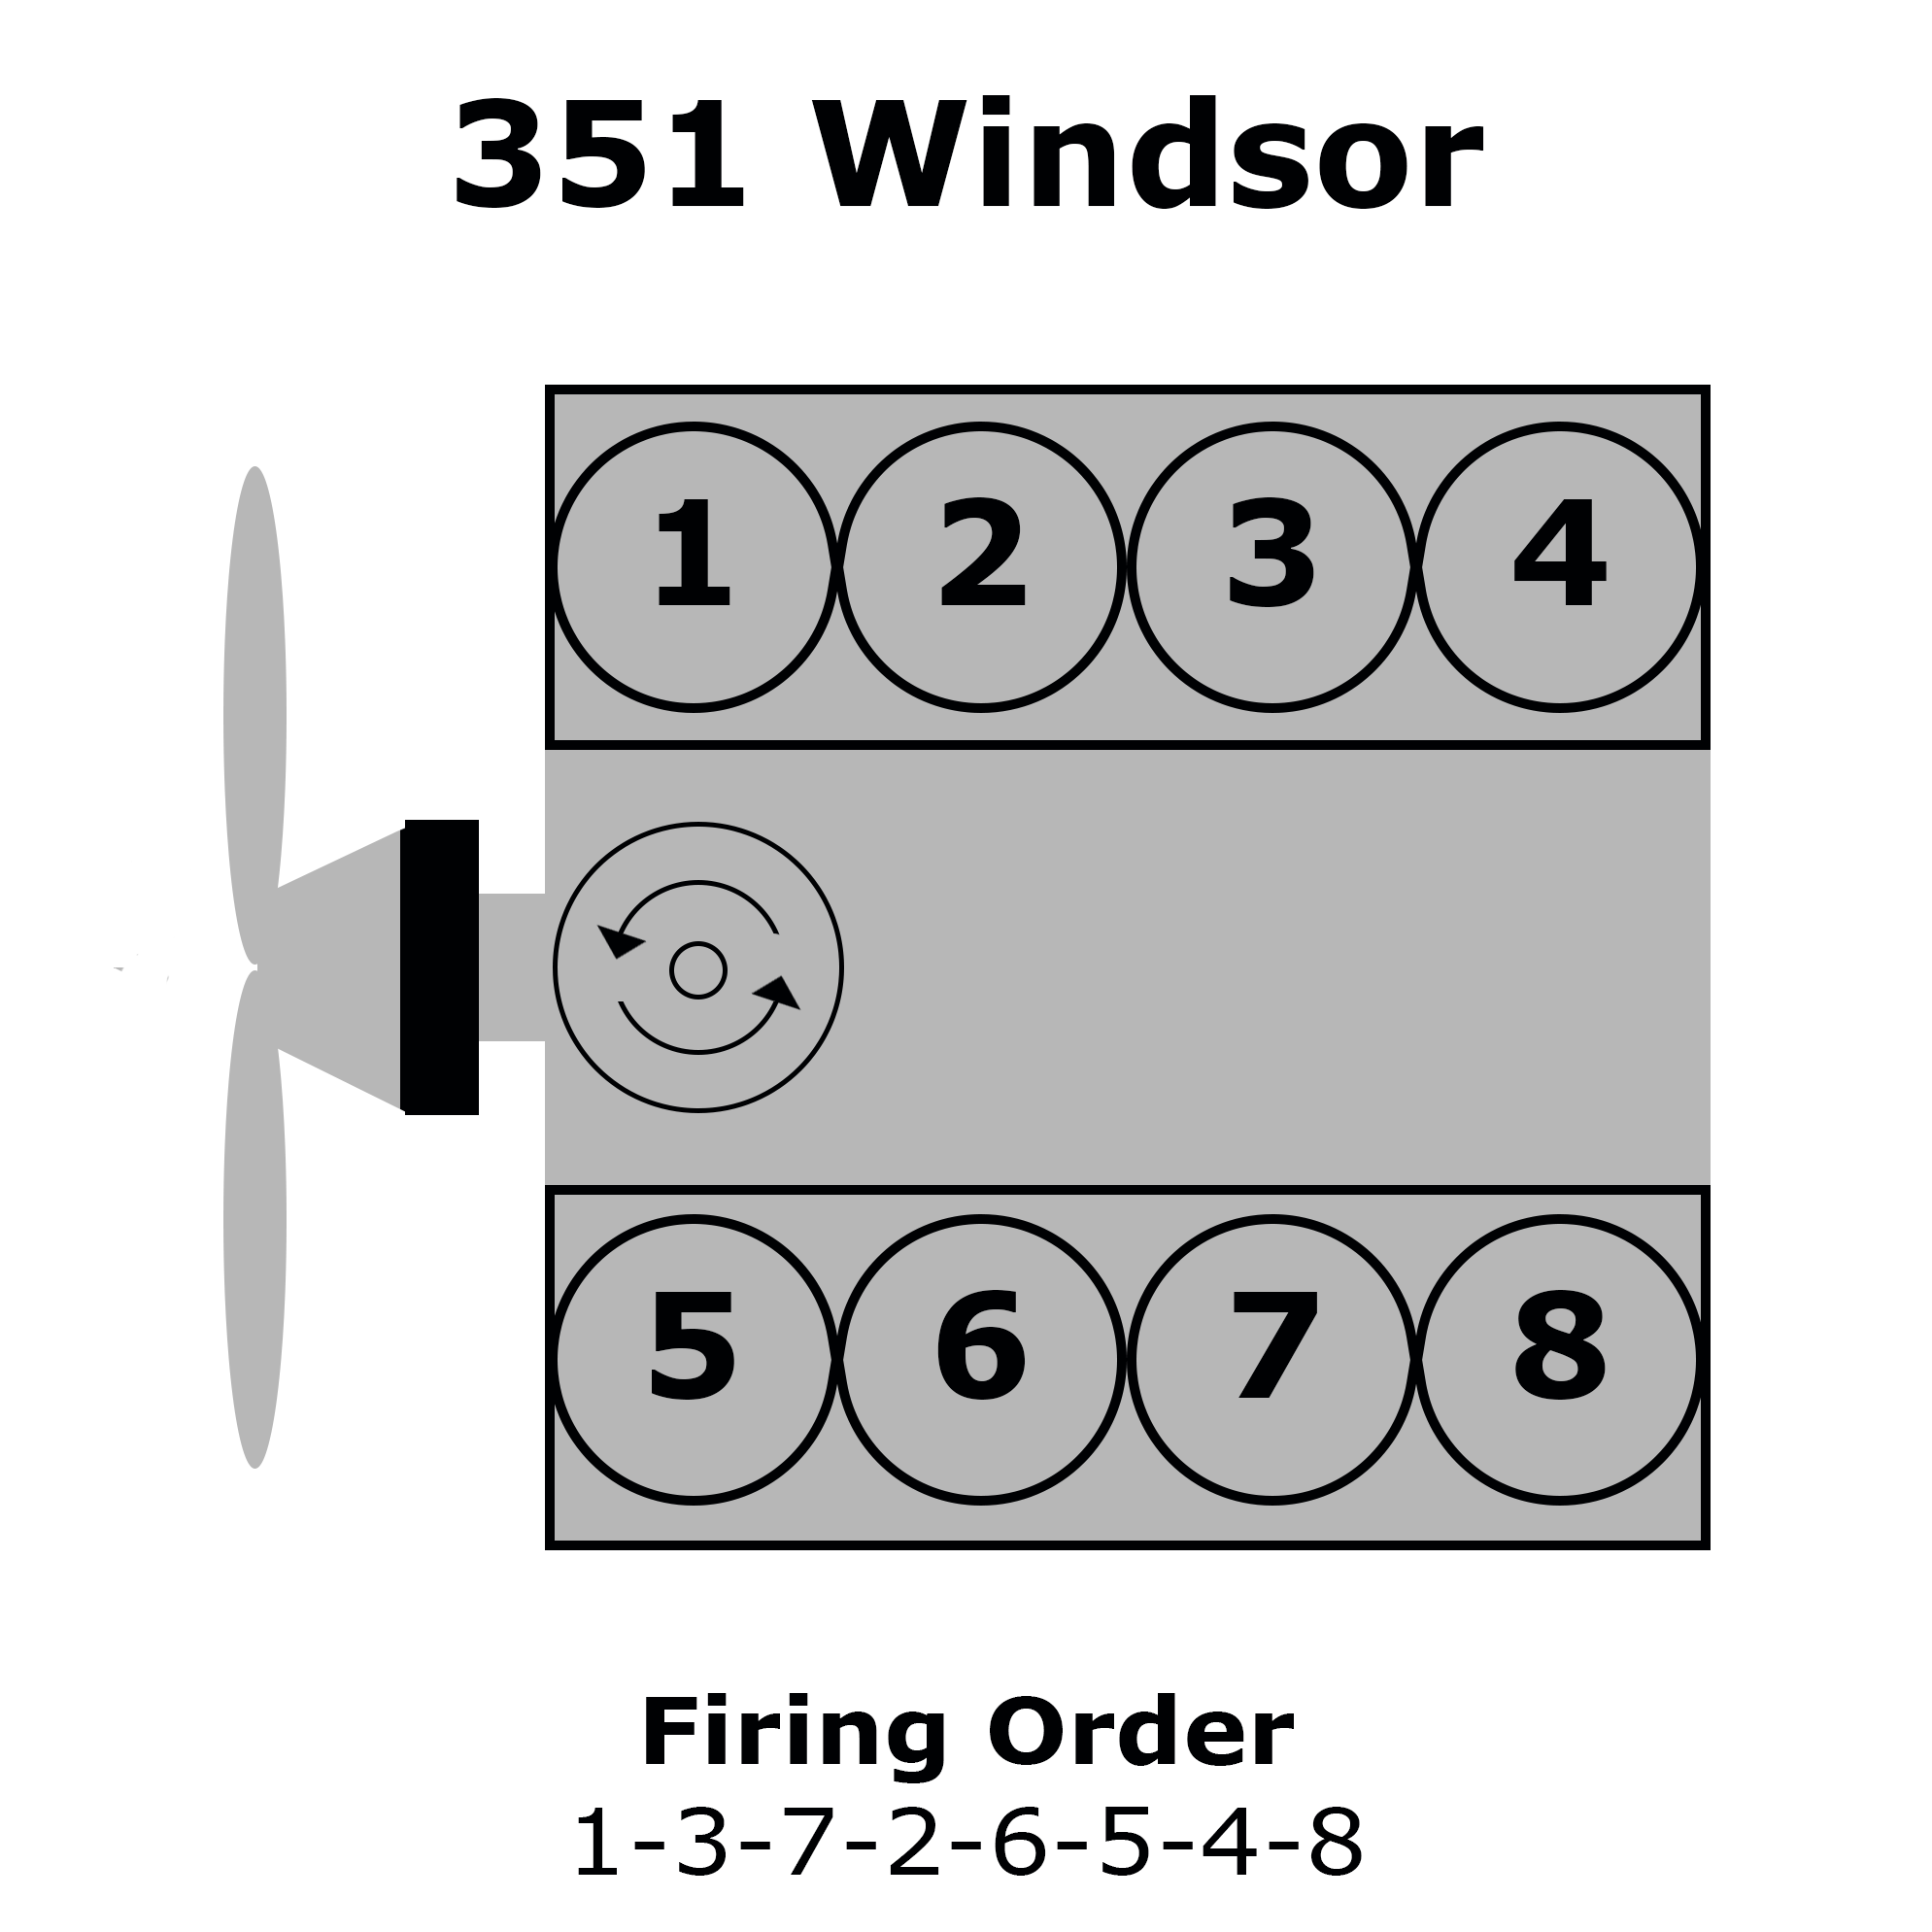 Firing Order For 351 Windsor